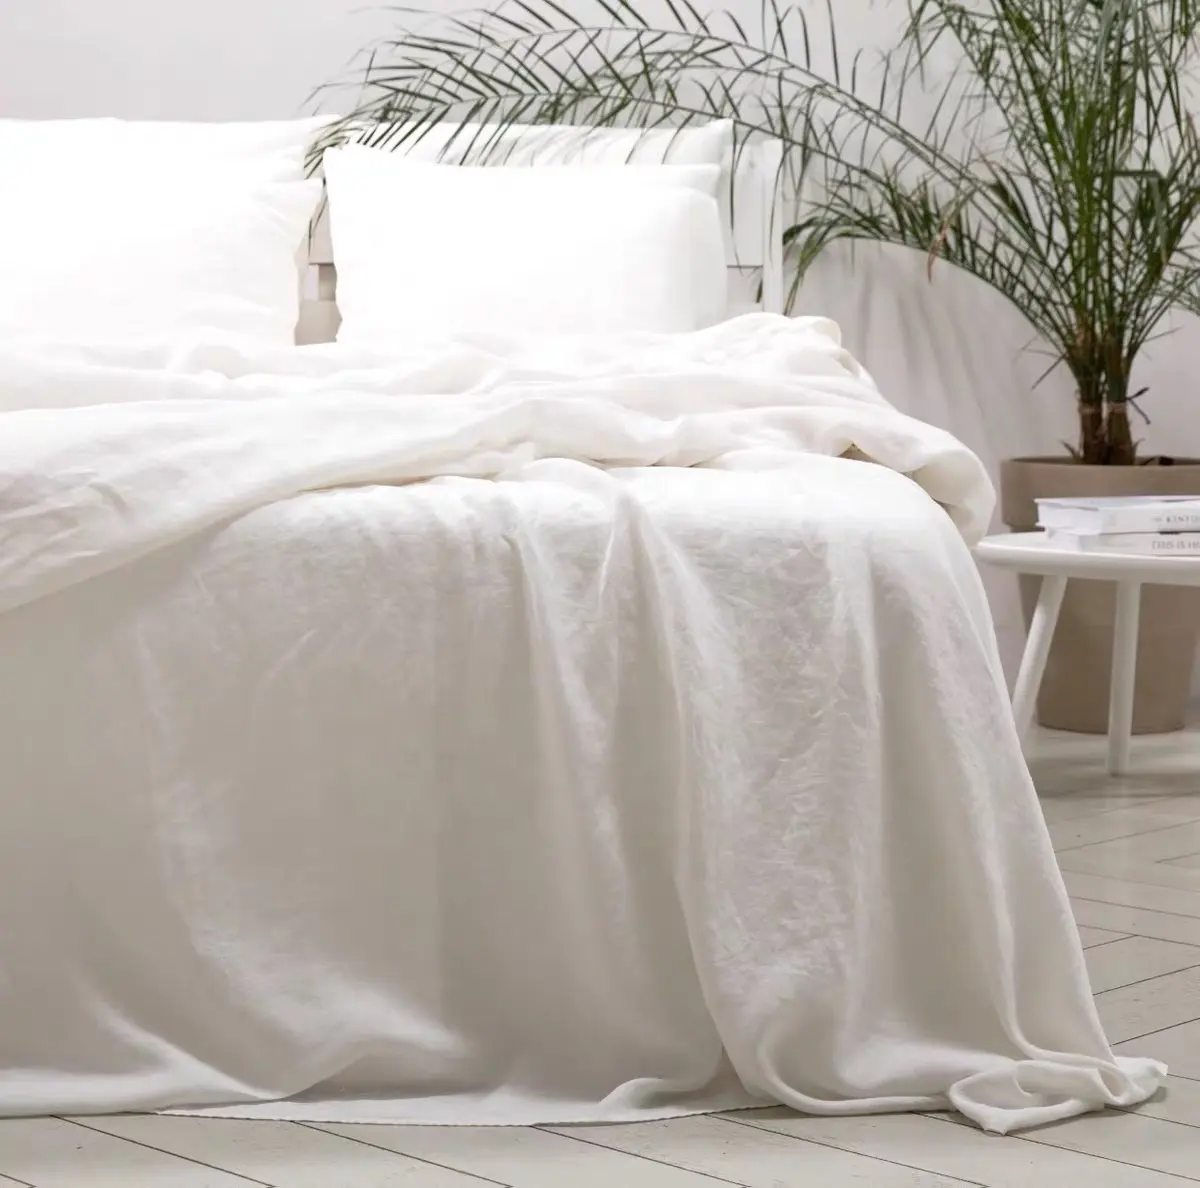 Linge de lit en lin organique, teint blanc crème coréenne de haute qualité, lin français pur, naturel, ensemble de 4 pièces